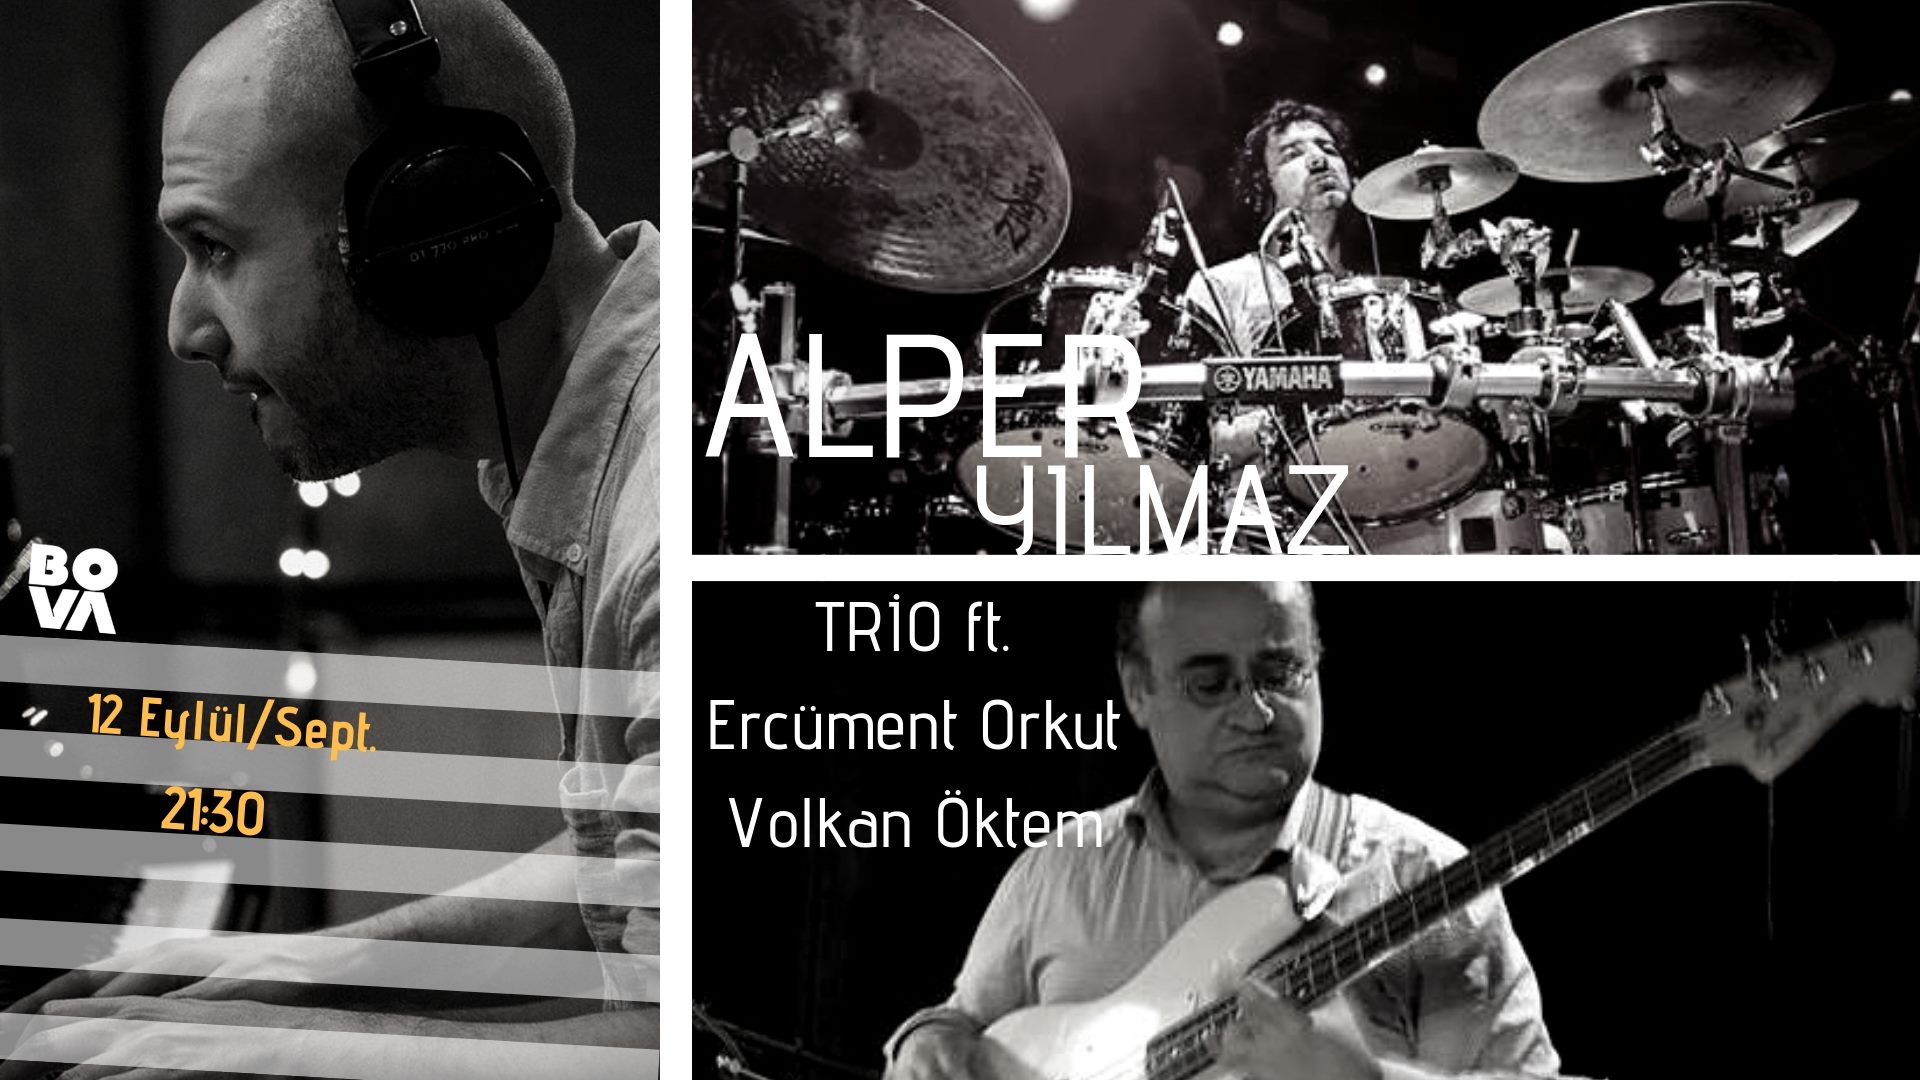 Alper Yılmaz Trio feat. Ercüment Orkut & Volkan Öktem